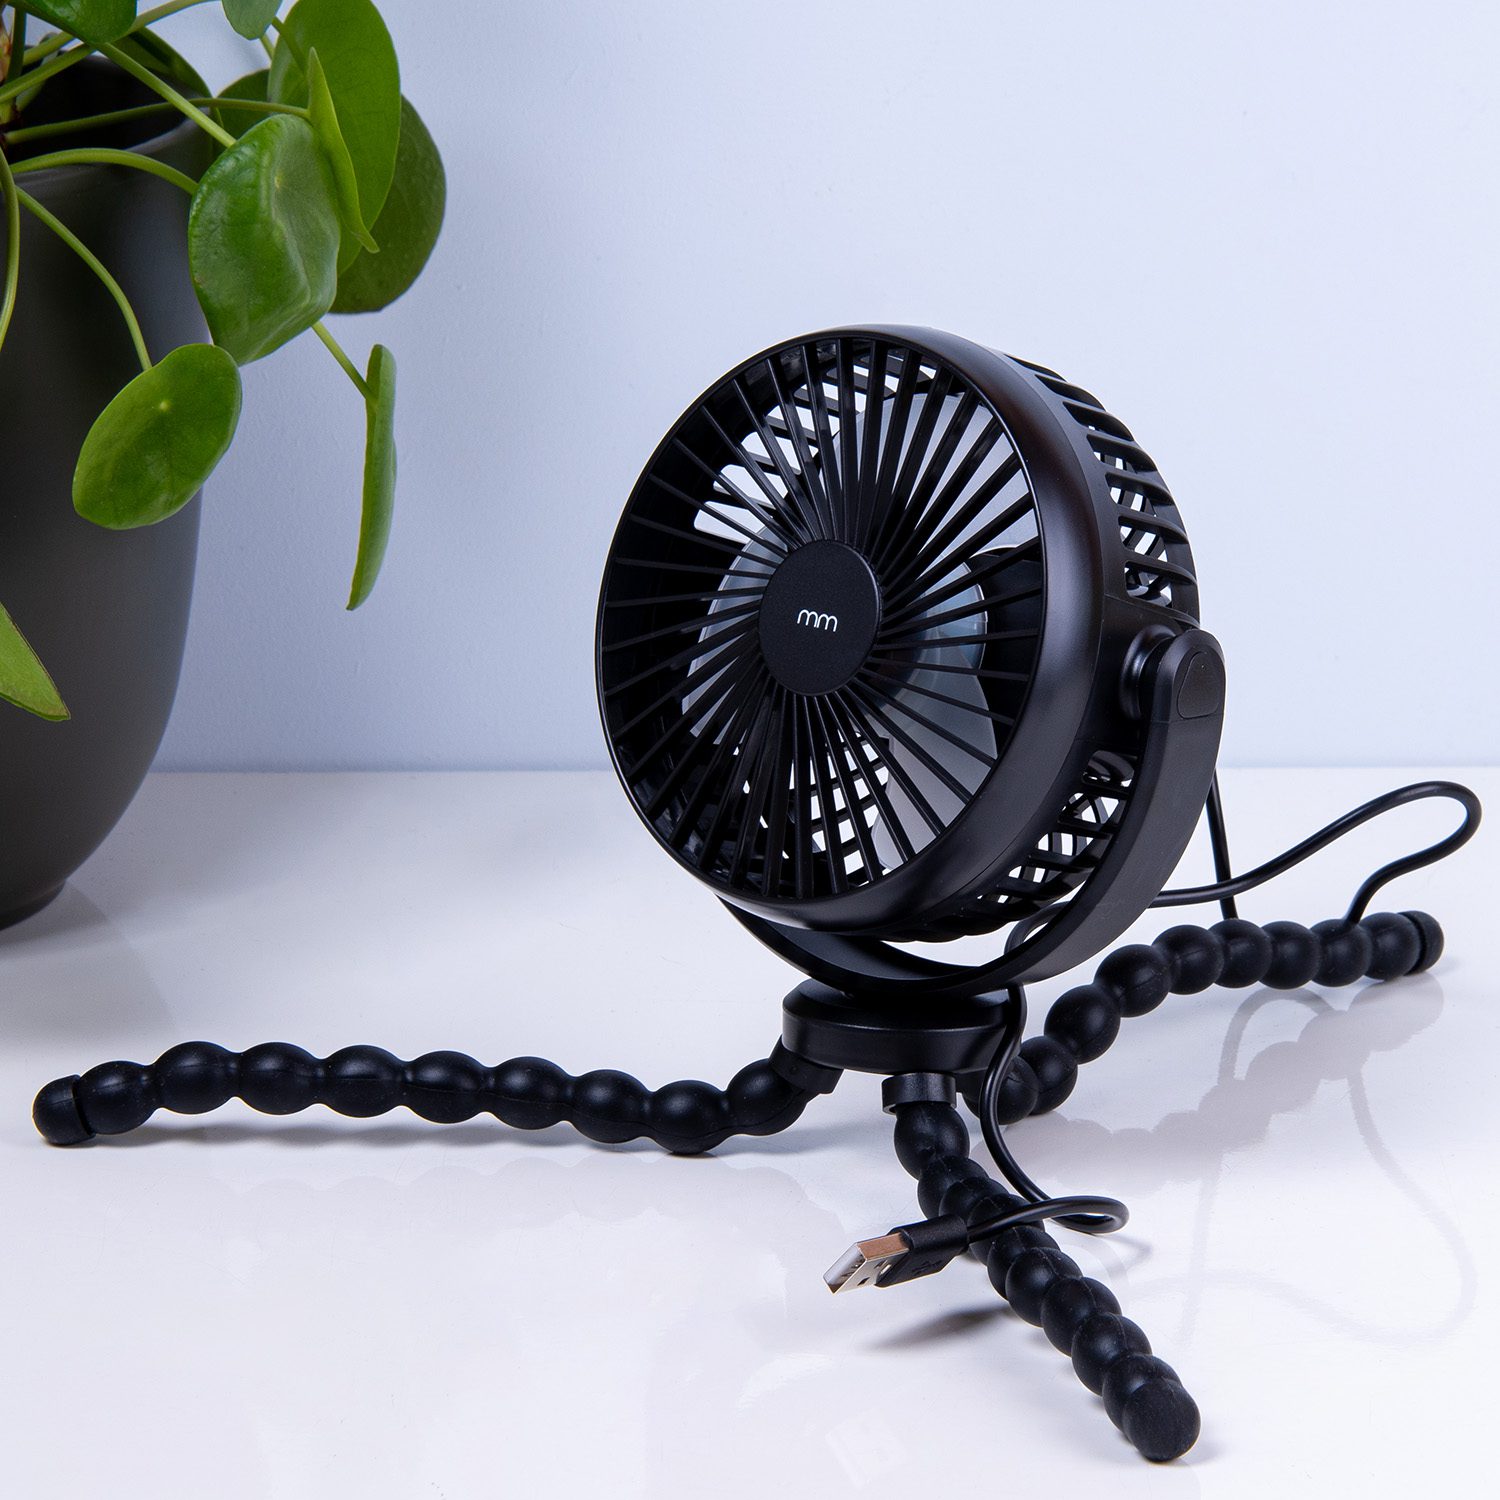 MikaMax - mm Flex Fan - Flexibele Ventilator - Draadloze Ventilator - Draagbare Ventilator - Overal op te hangen - Zwart - 40 Uur verkoeling